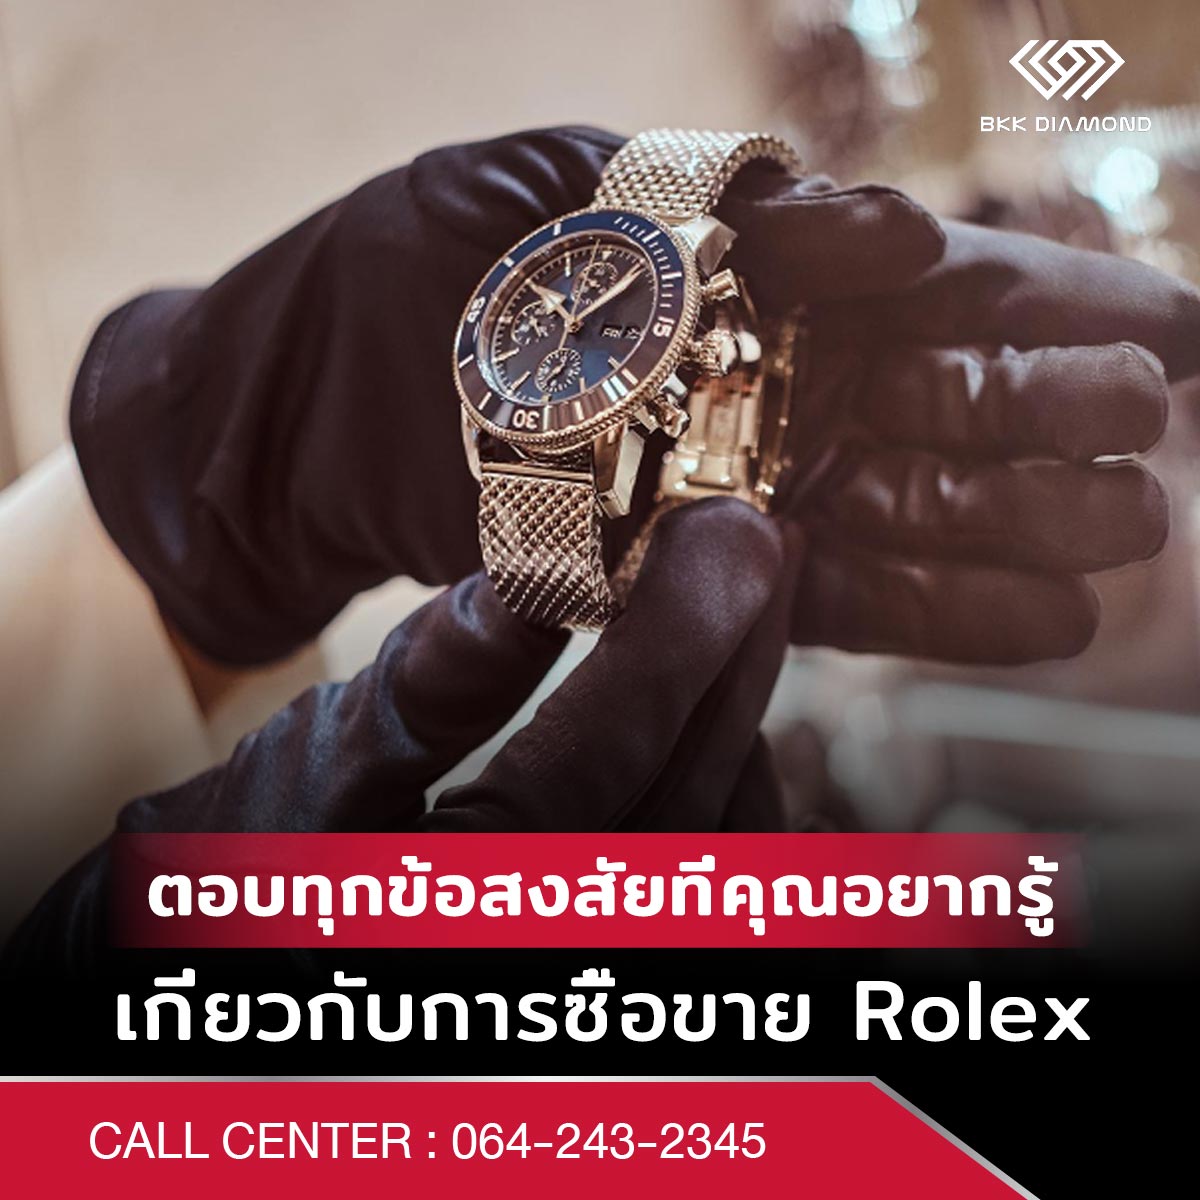 ตอบทุกข้อสงสัยที่คุณอยากรู้เกี่ยวกับการซื้อขาย Rolex